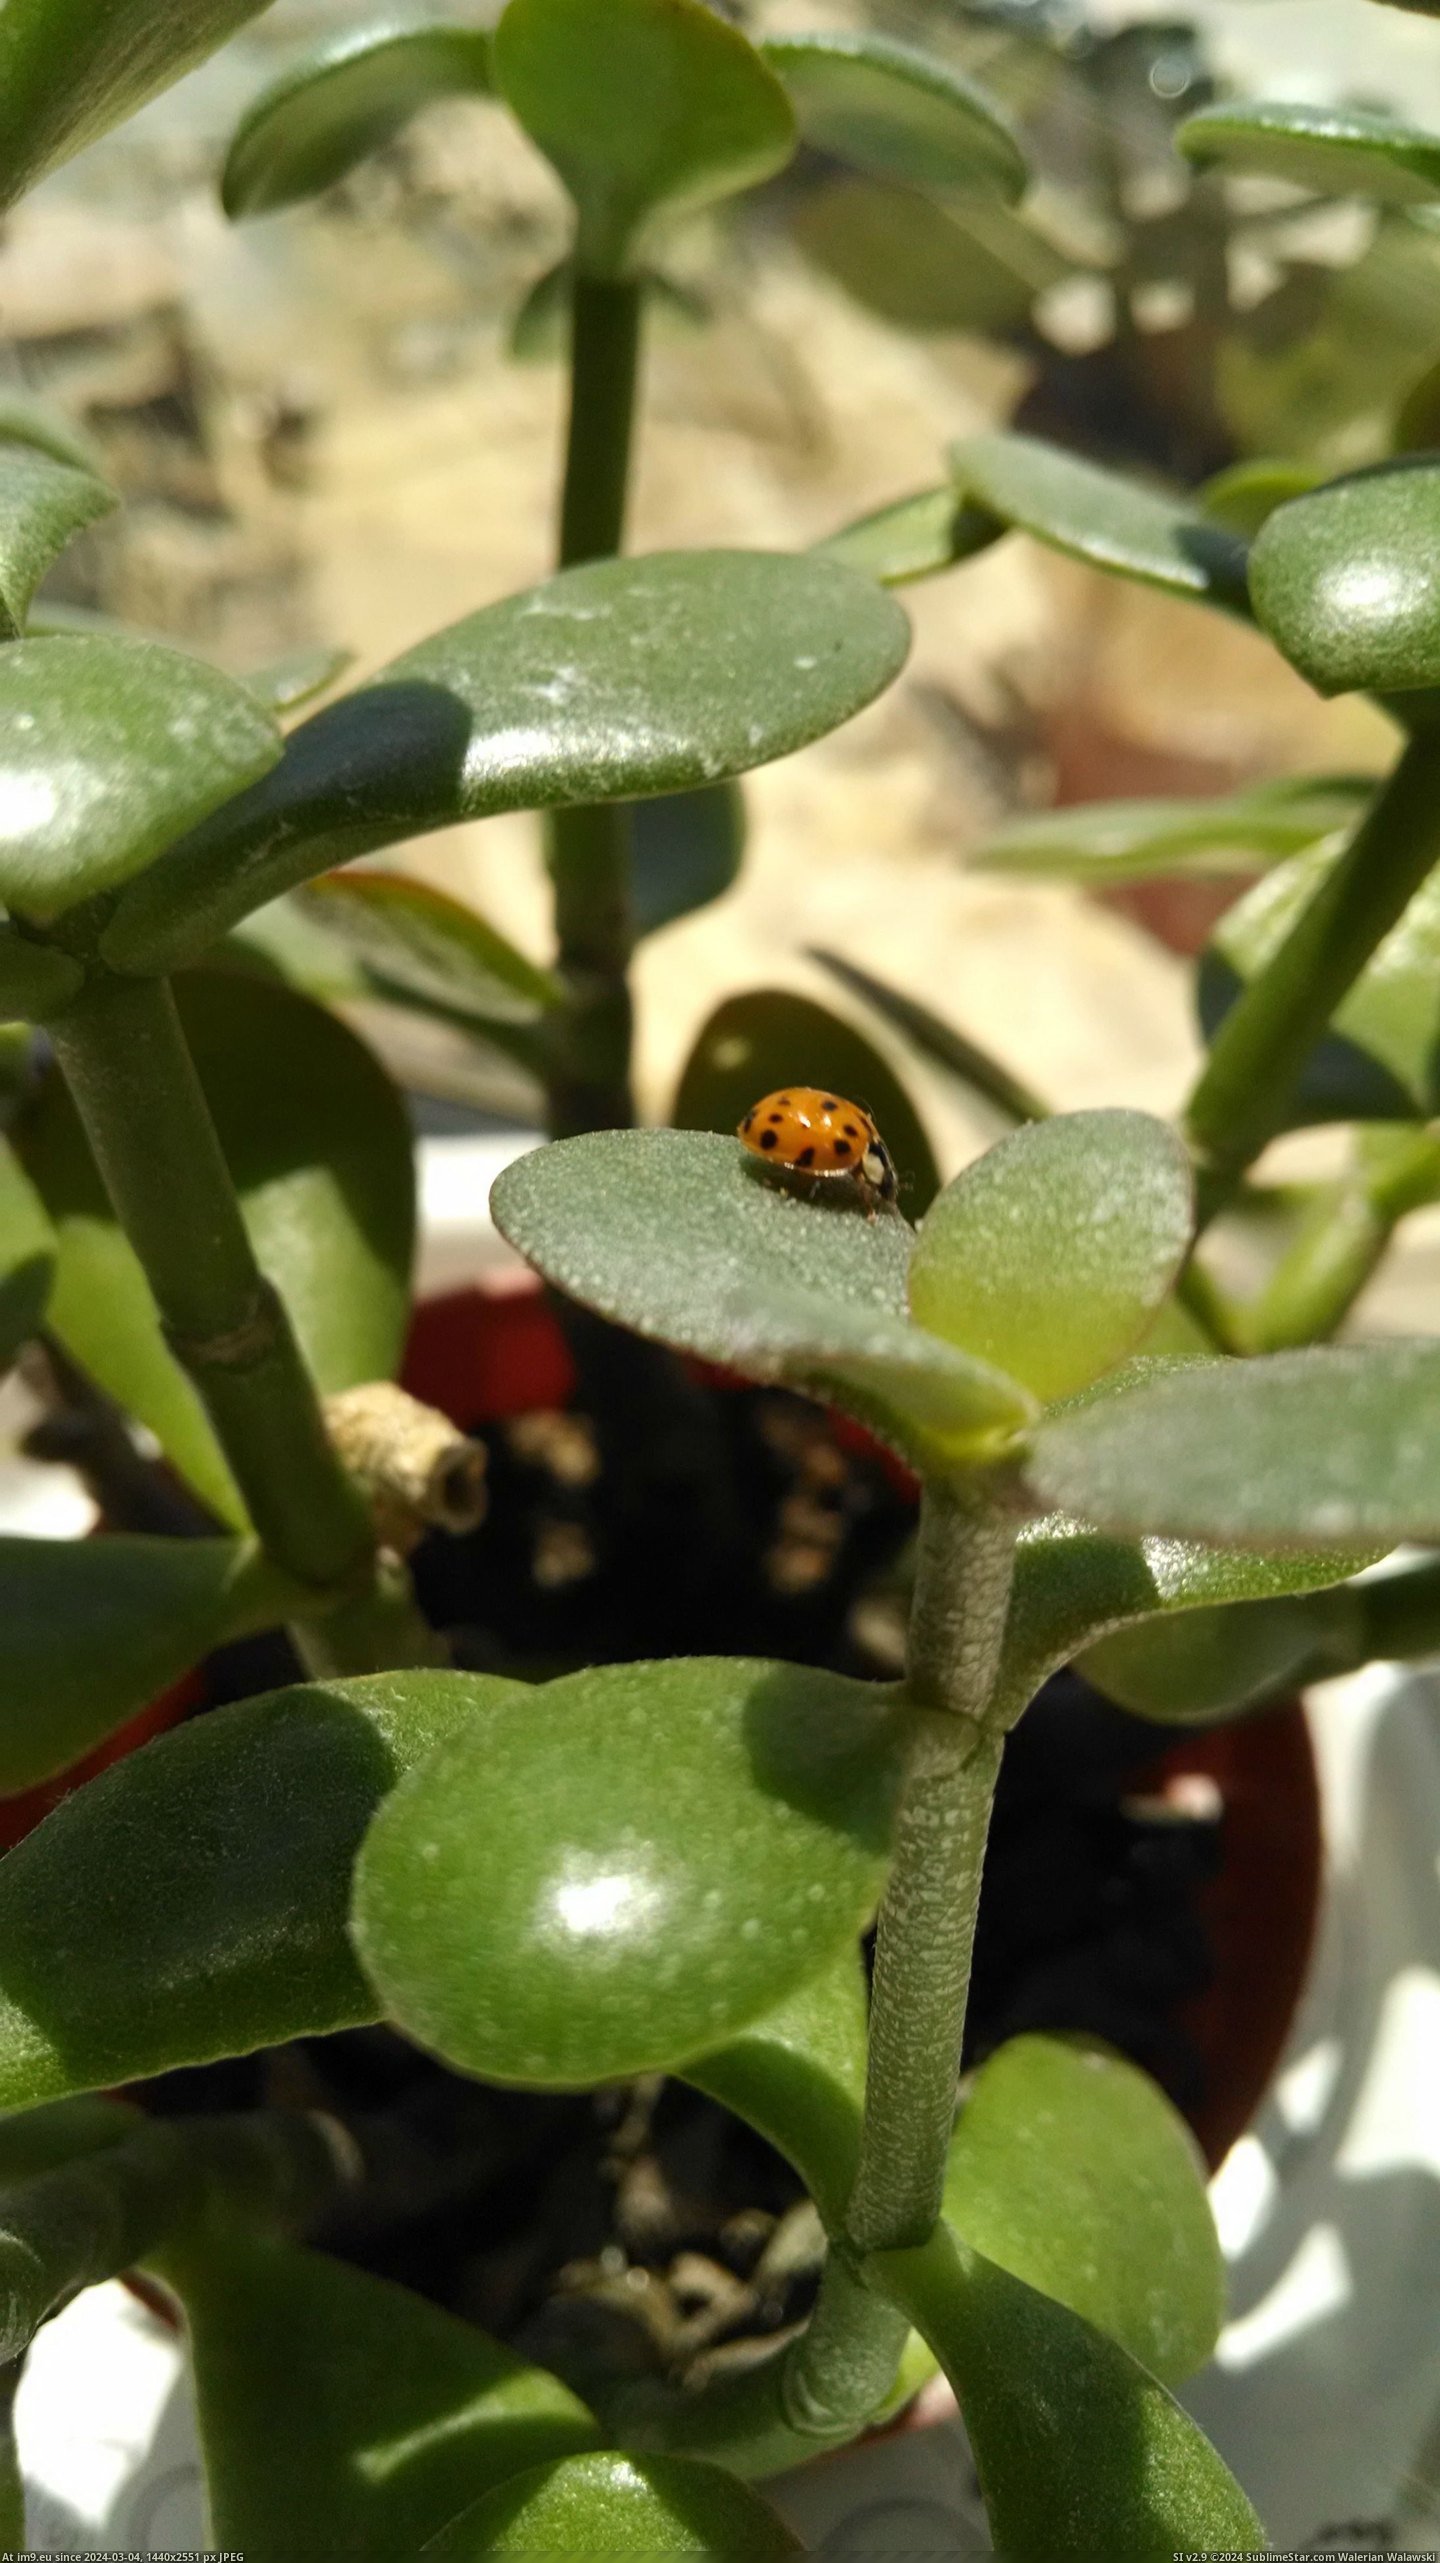 #Port #Ladybug #Usb [Mildlyinteresting] Found a ladybug in my usb port 2 Pic. (Image of album My r/MILDLYINTERESTING favs))